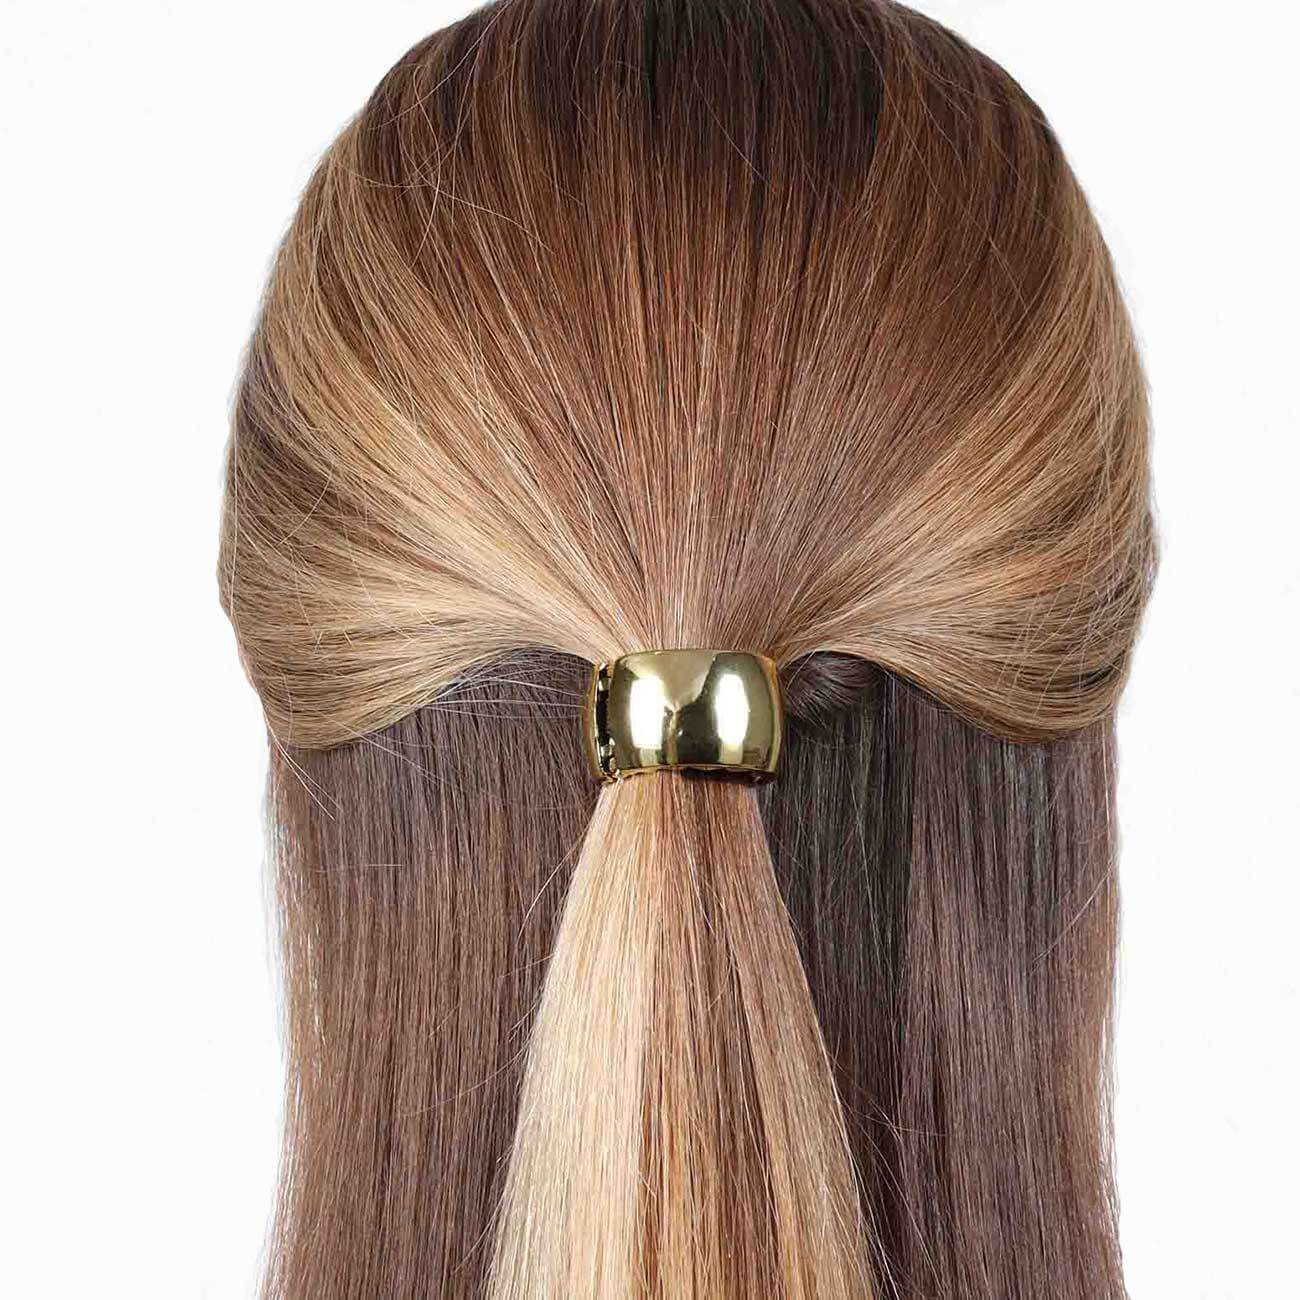 Резинка для волос, 5 см, с кольцом-зажимом, пластик, золотистая, Кольцо, Hairstyle ободок для волос детский